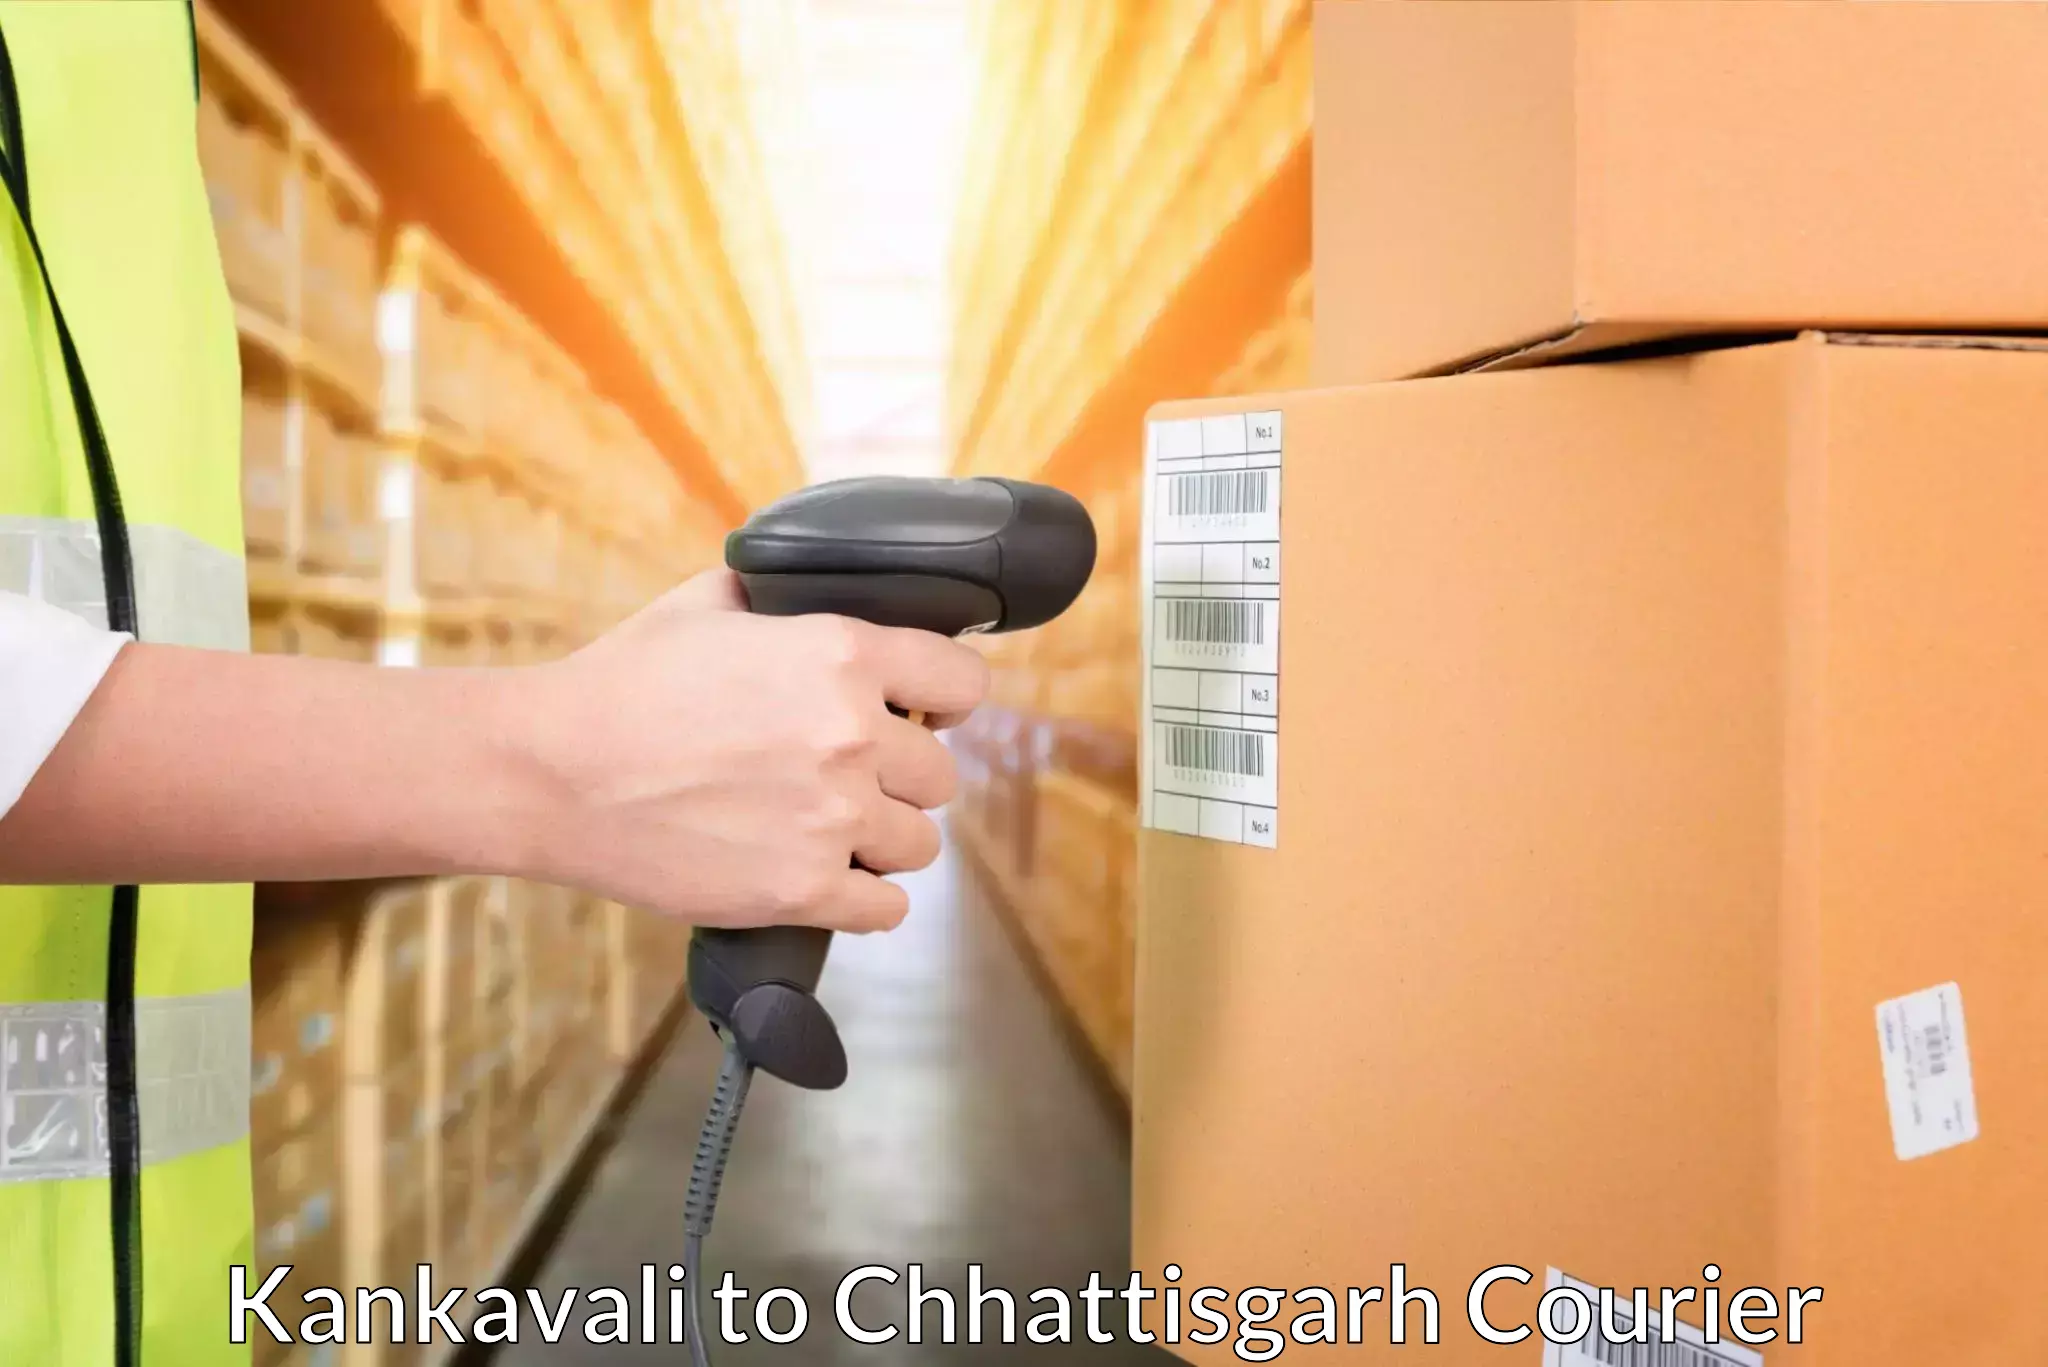 Logistics service provider Kankavali to Dantewada